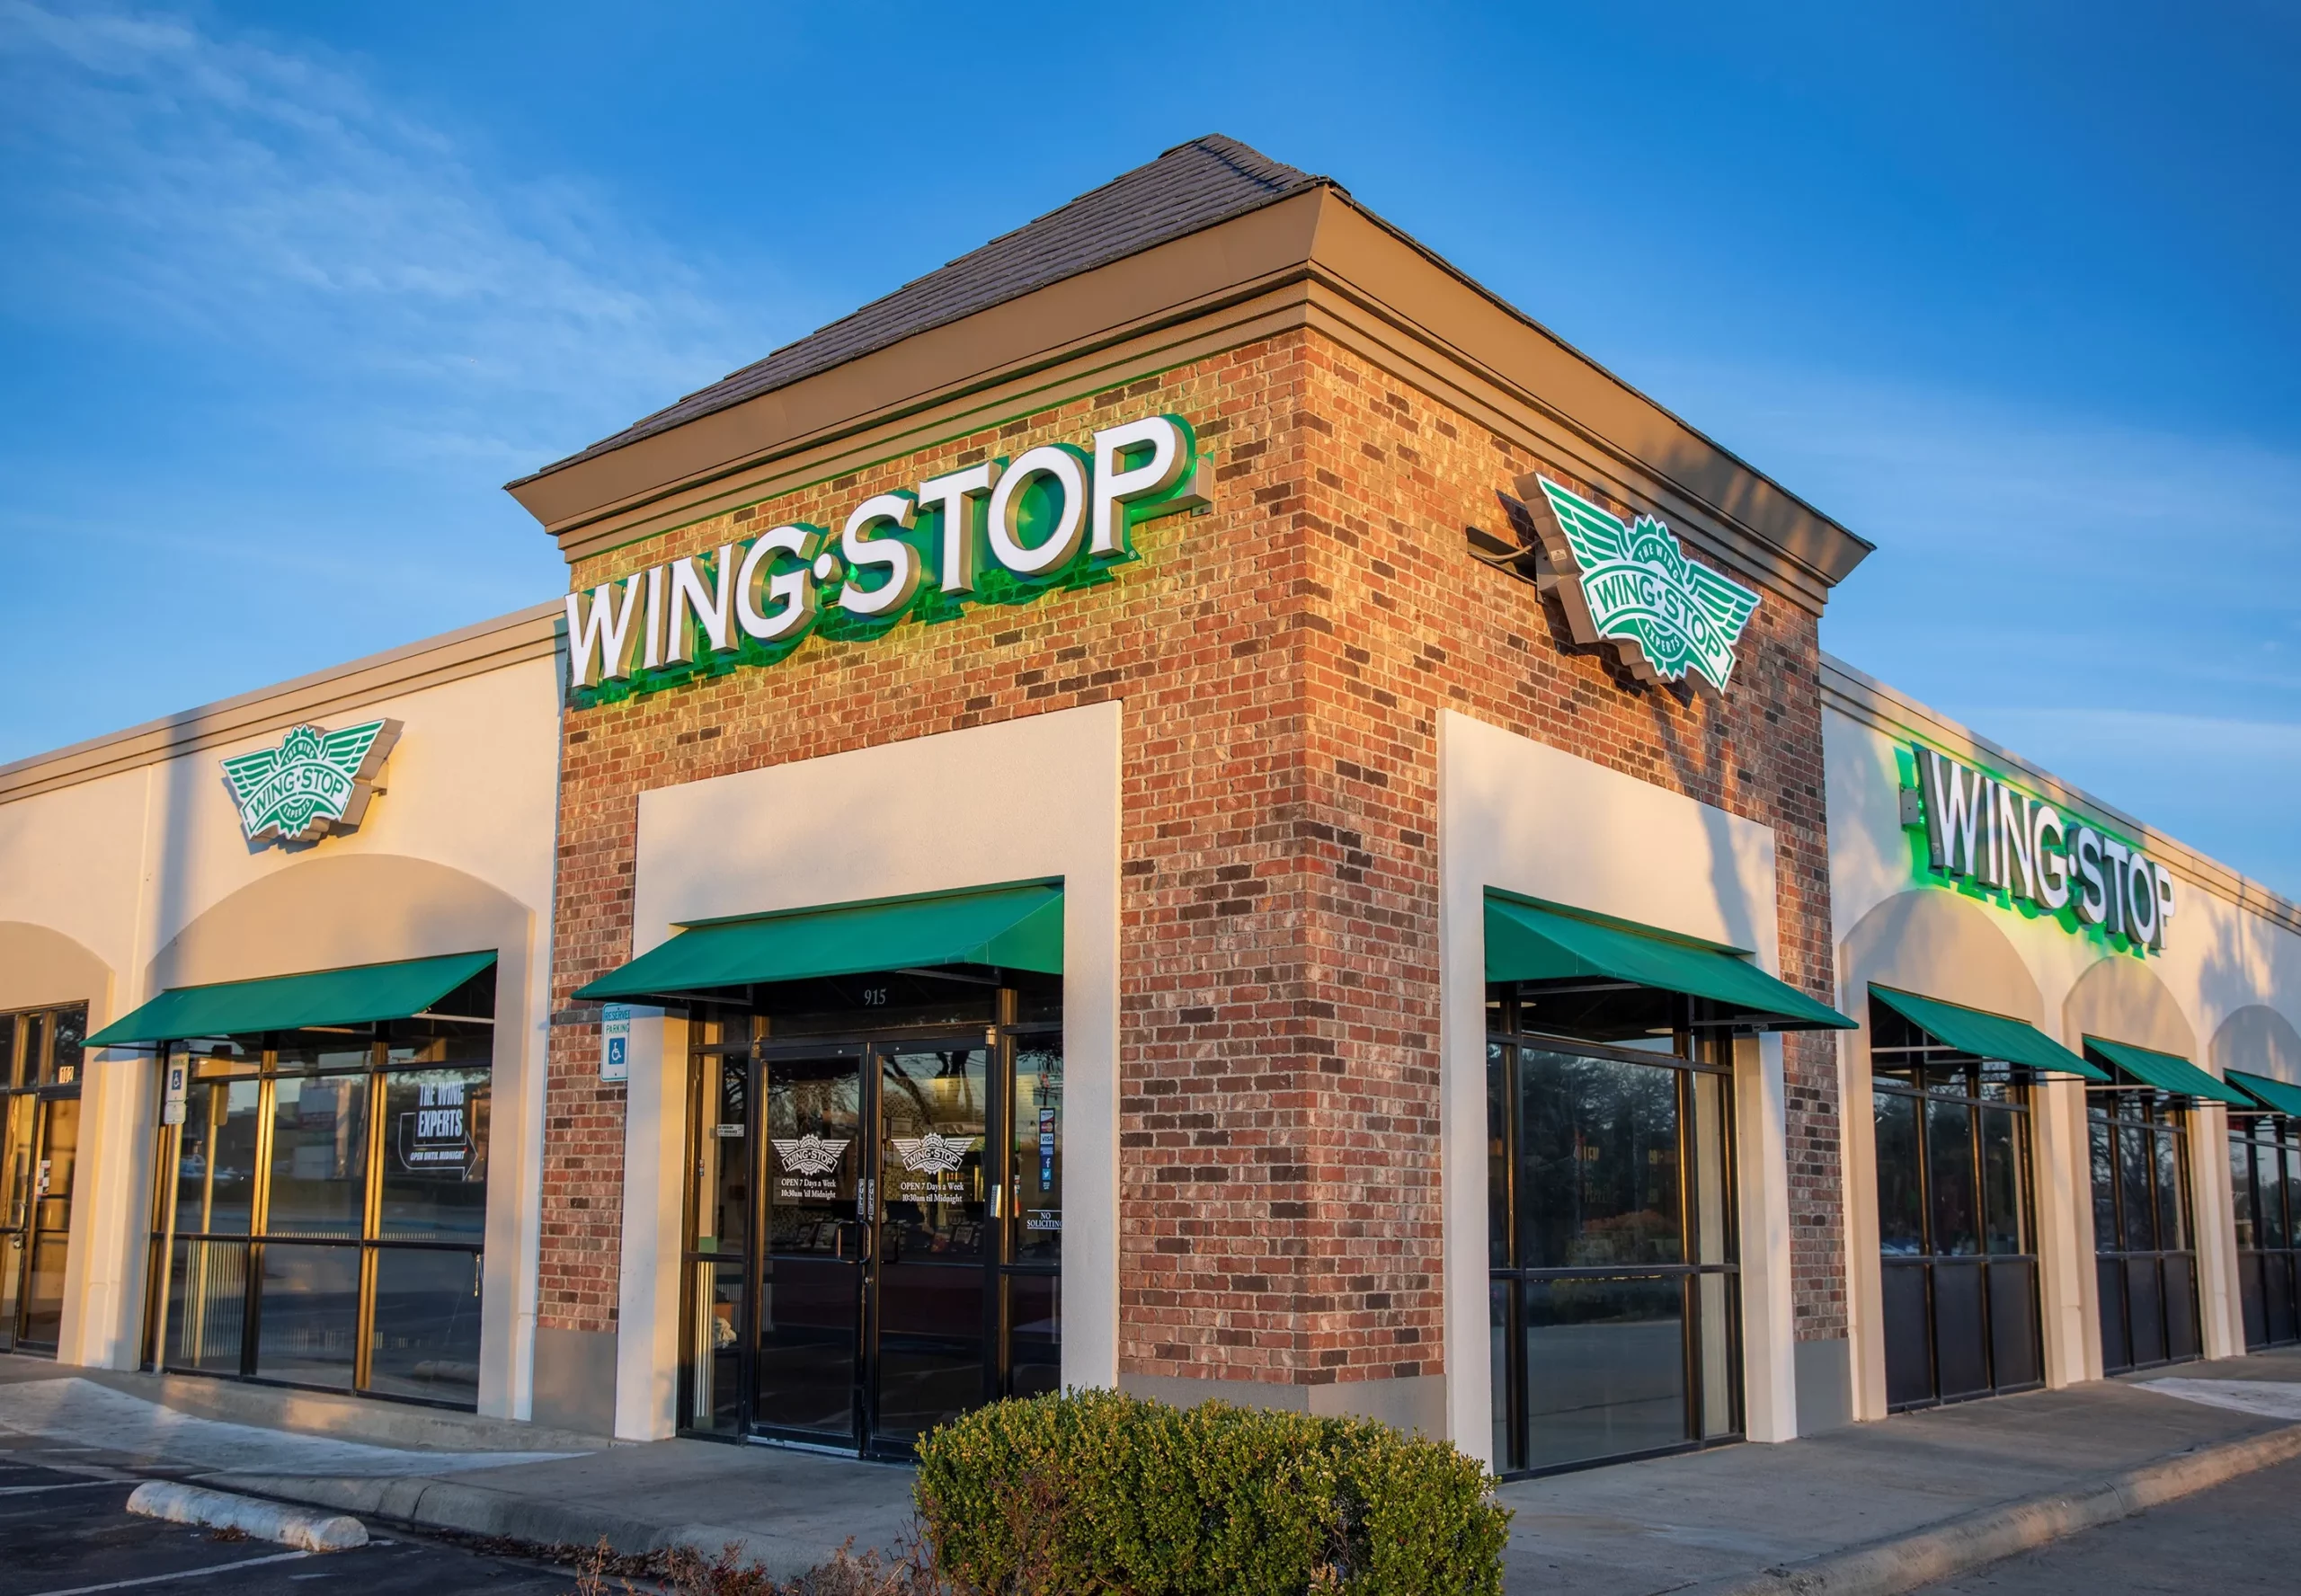 Wingstop.com/survey - Win a $50 Gift Card - Wingstop Survey